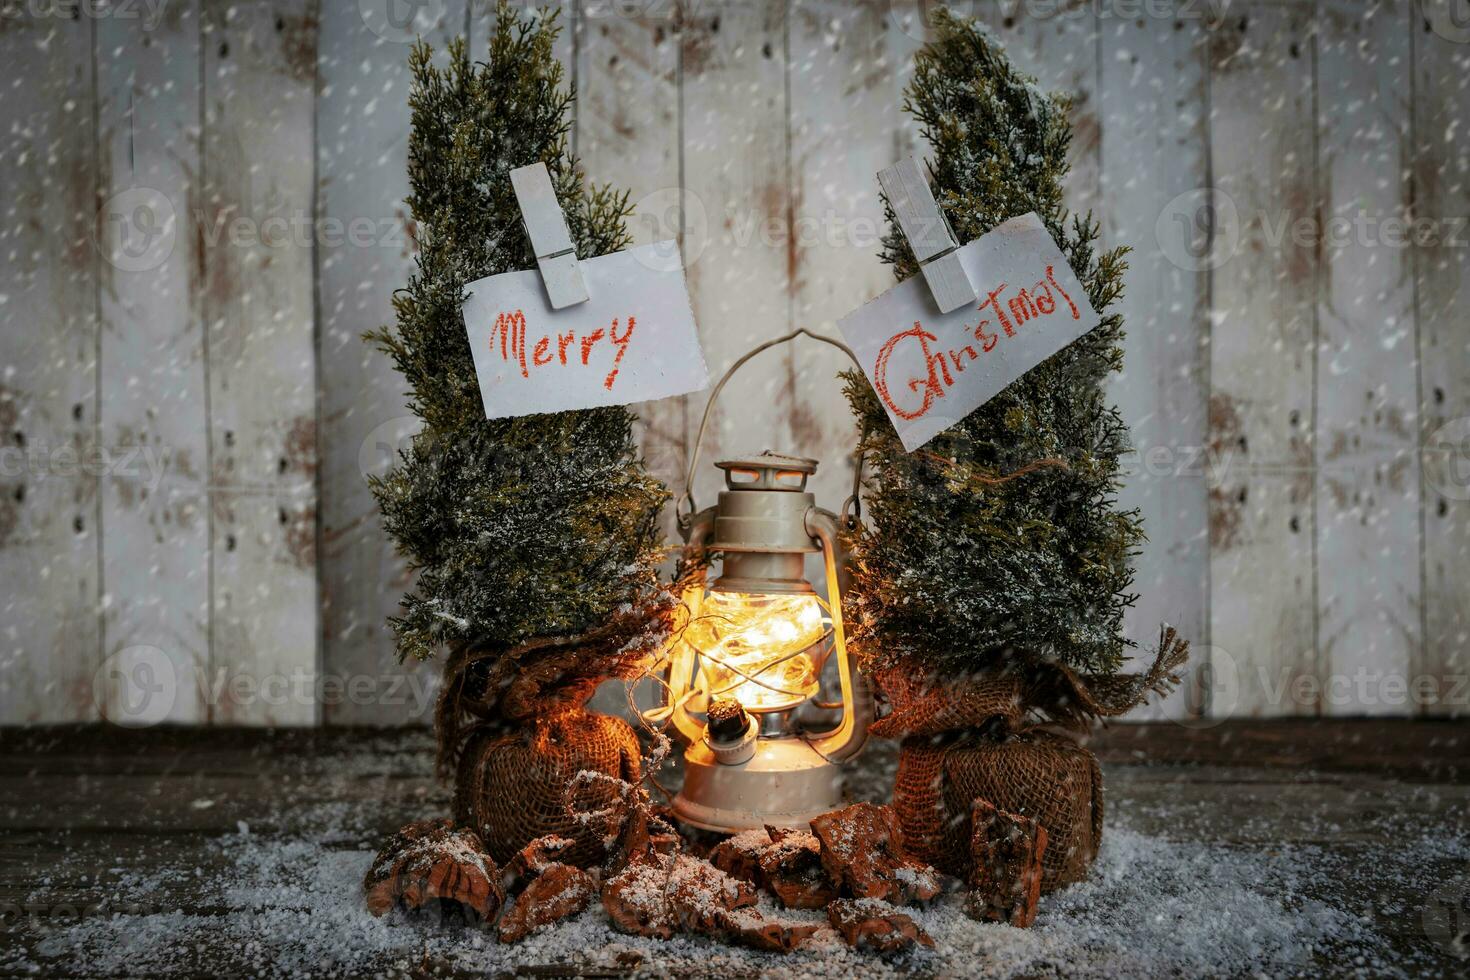 Noël salutation cartes pendaison de deux pin des arbres entre une lanterne dans le neige photo